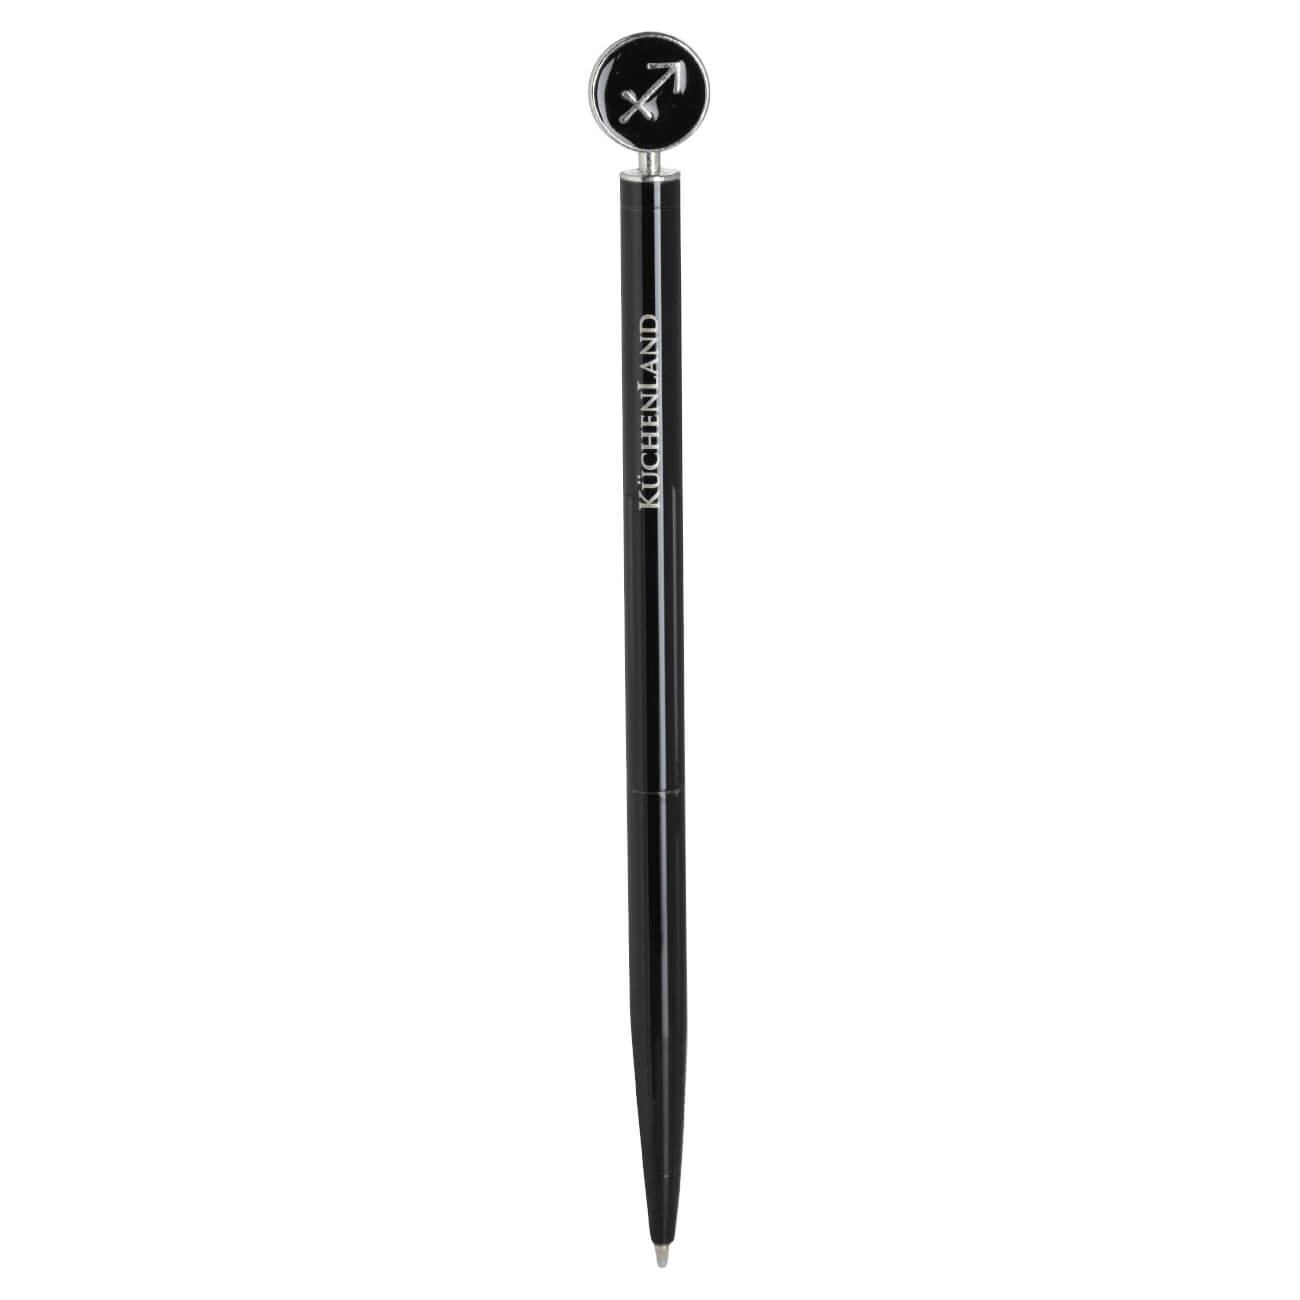 Ручка шариковая, 15 см, с фигуркой, сталь, черно-серебристая, Стрелец, Zodiac brass rollerball ручка